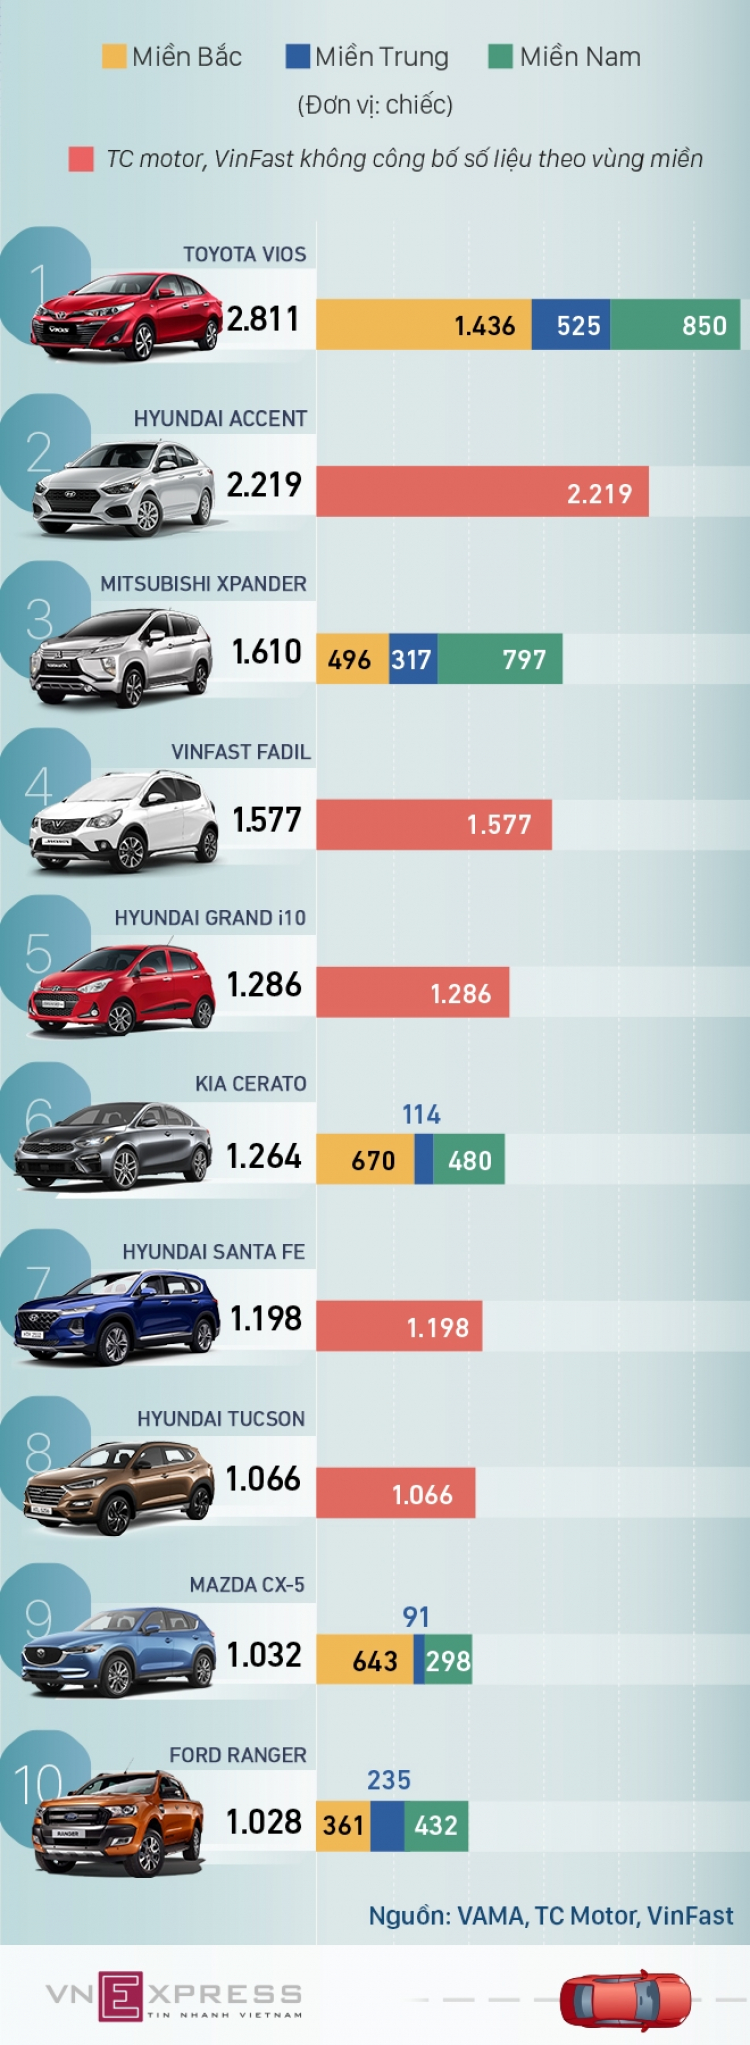 Doanh số Hyundai tháng 7/2020 tăng mạnh: Tucson và Santa Fe bán hơn 1.000 chiếc